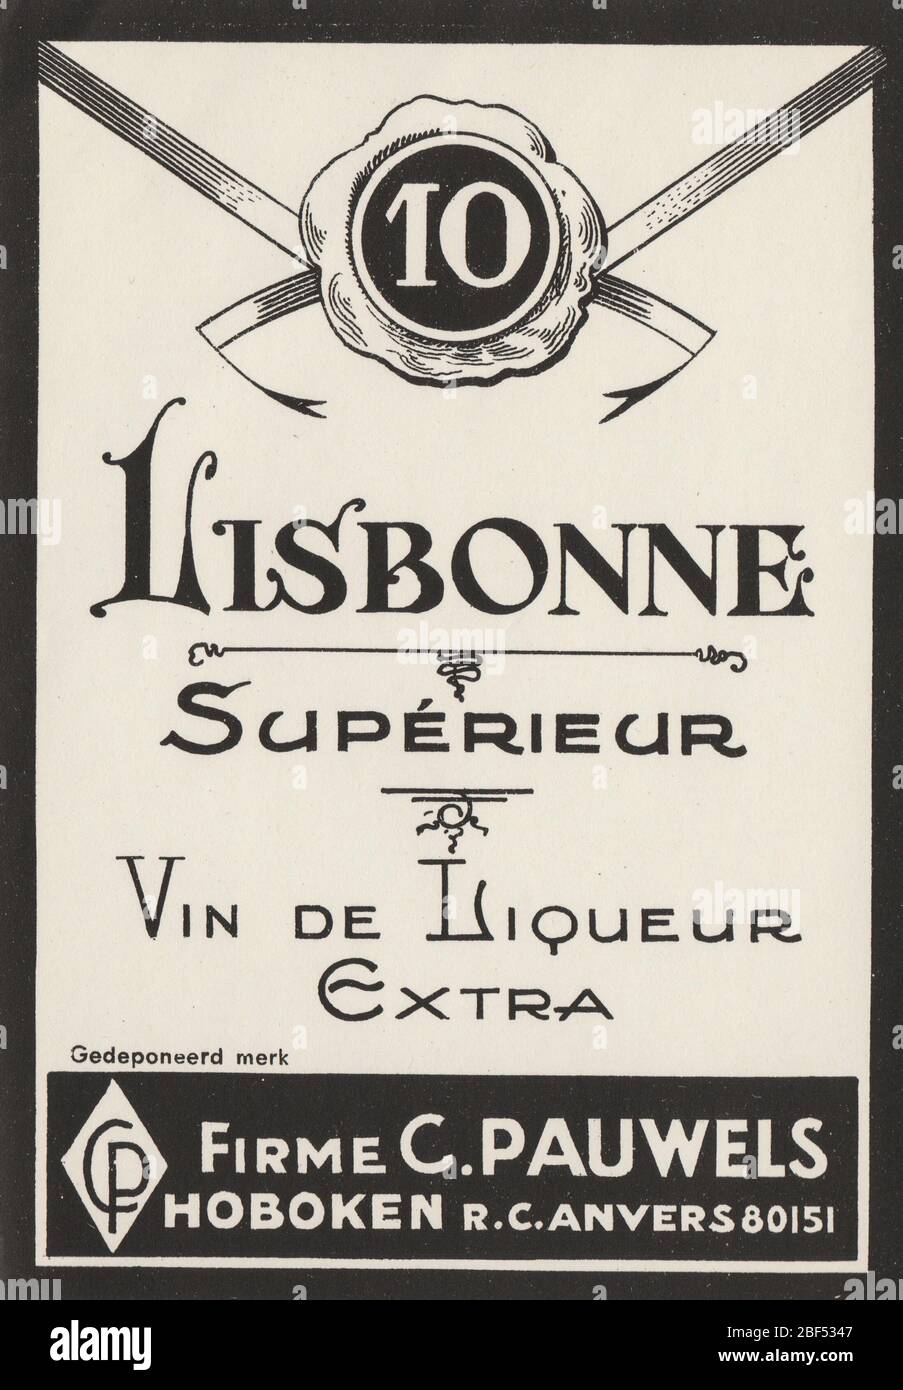 Unused and rare vintage label of Lisbonne supérieur Vin de liqueur ginjinha or liqueur de ginja, Portugal Stock Photo